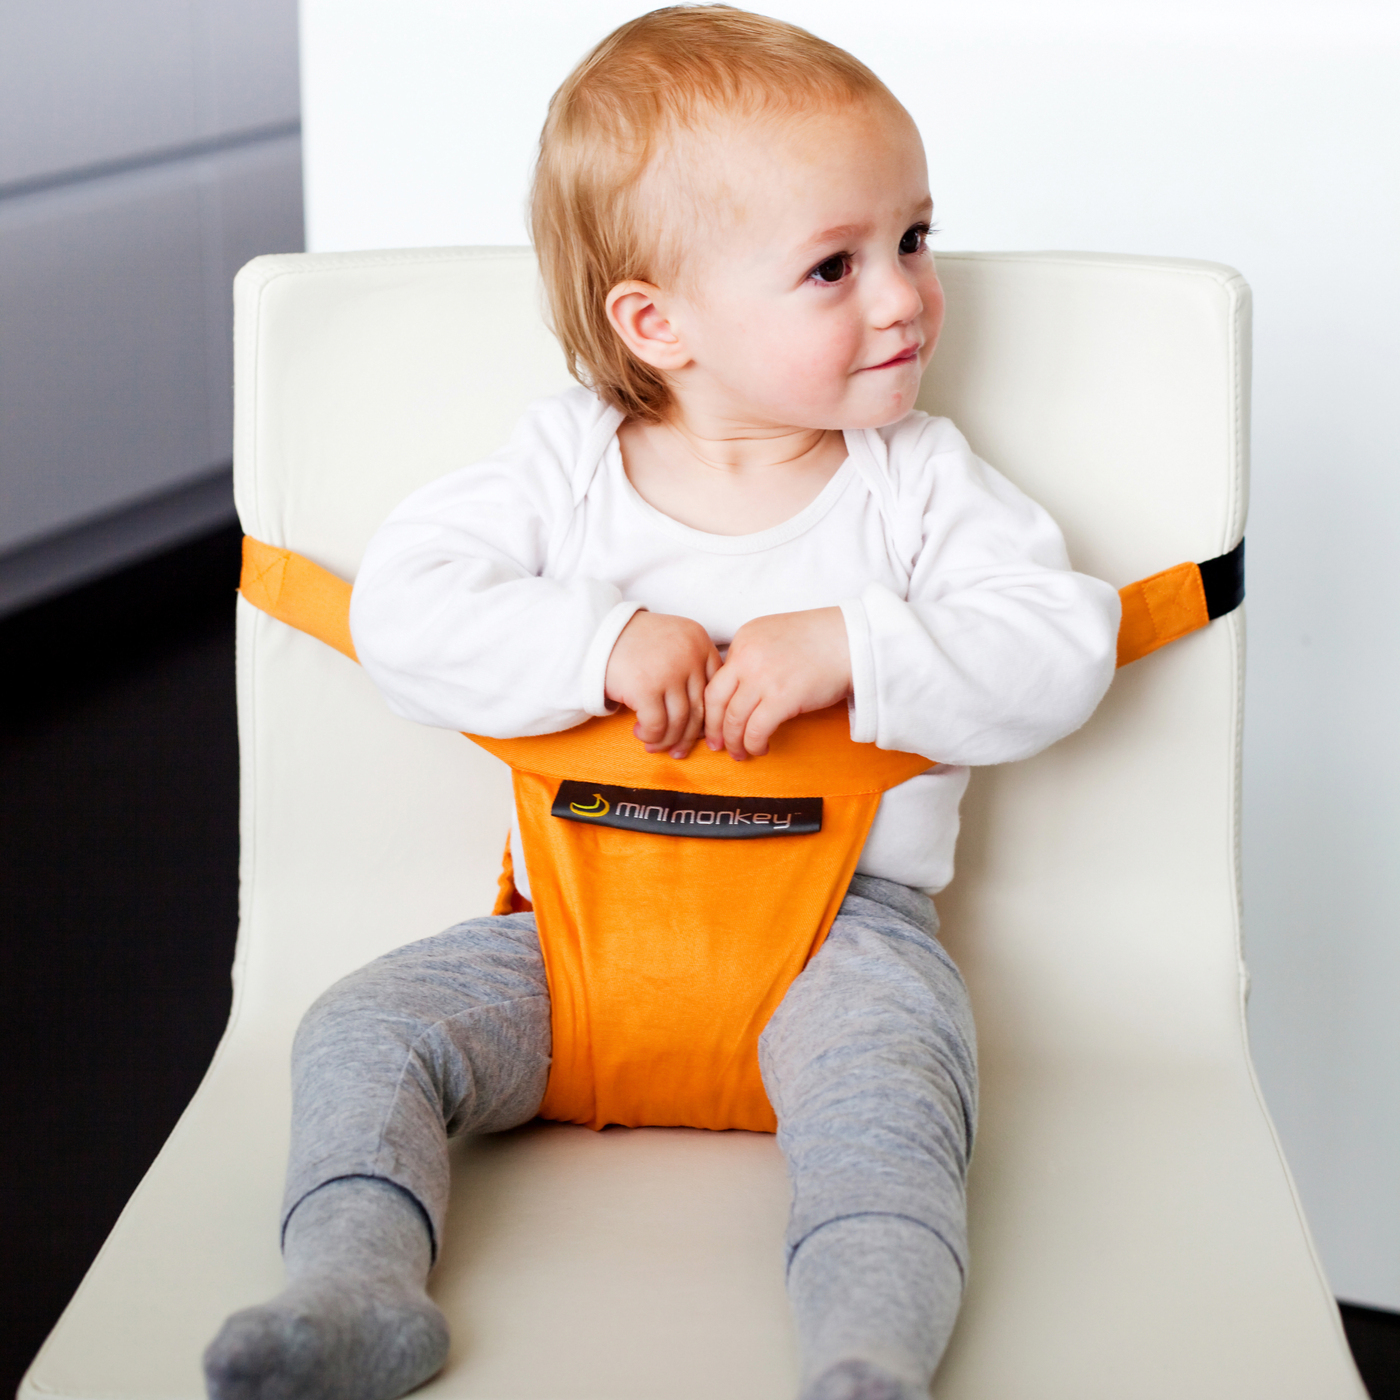 ремни для ребенка на стул